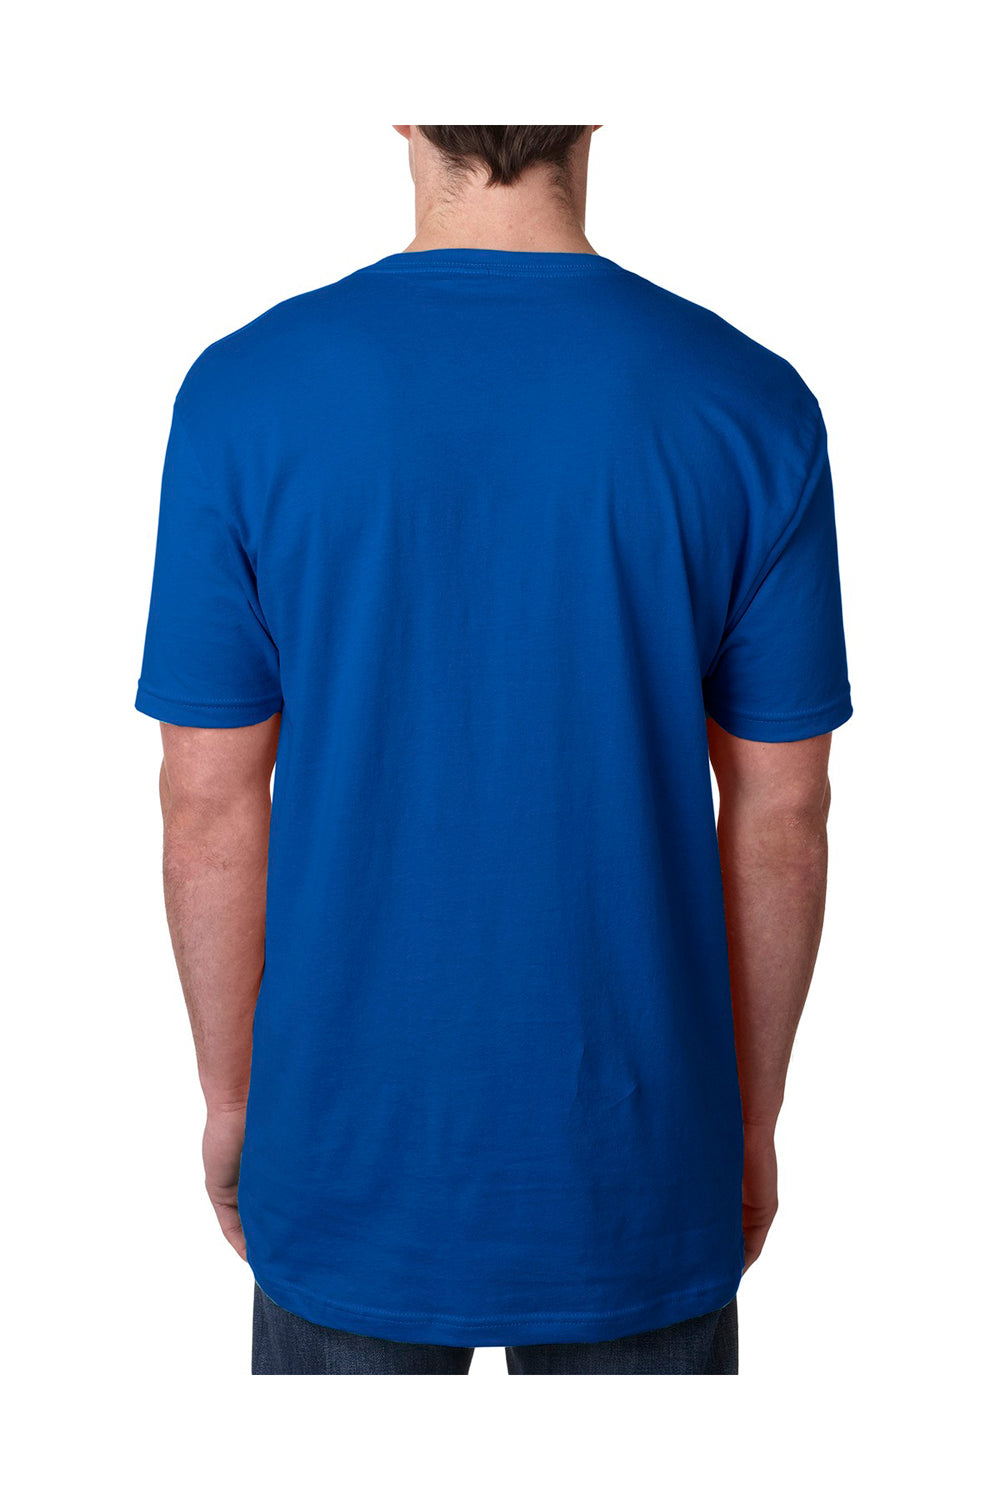 Next Level N3200 Mens Fine Jersey Short Sleeve V-Neck T-Shirt Royal Blue Back